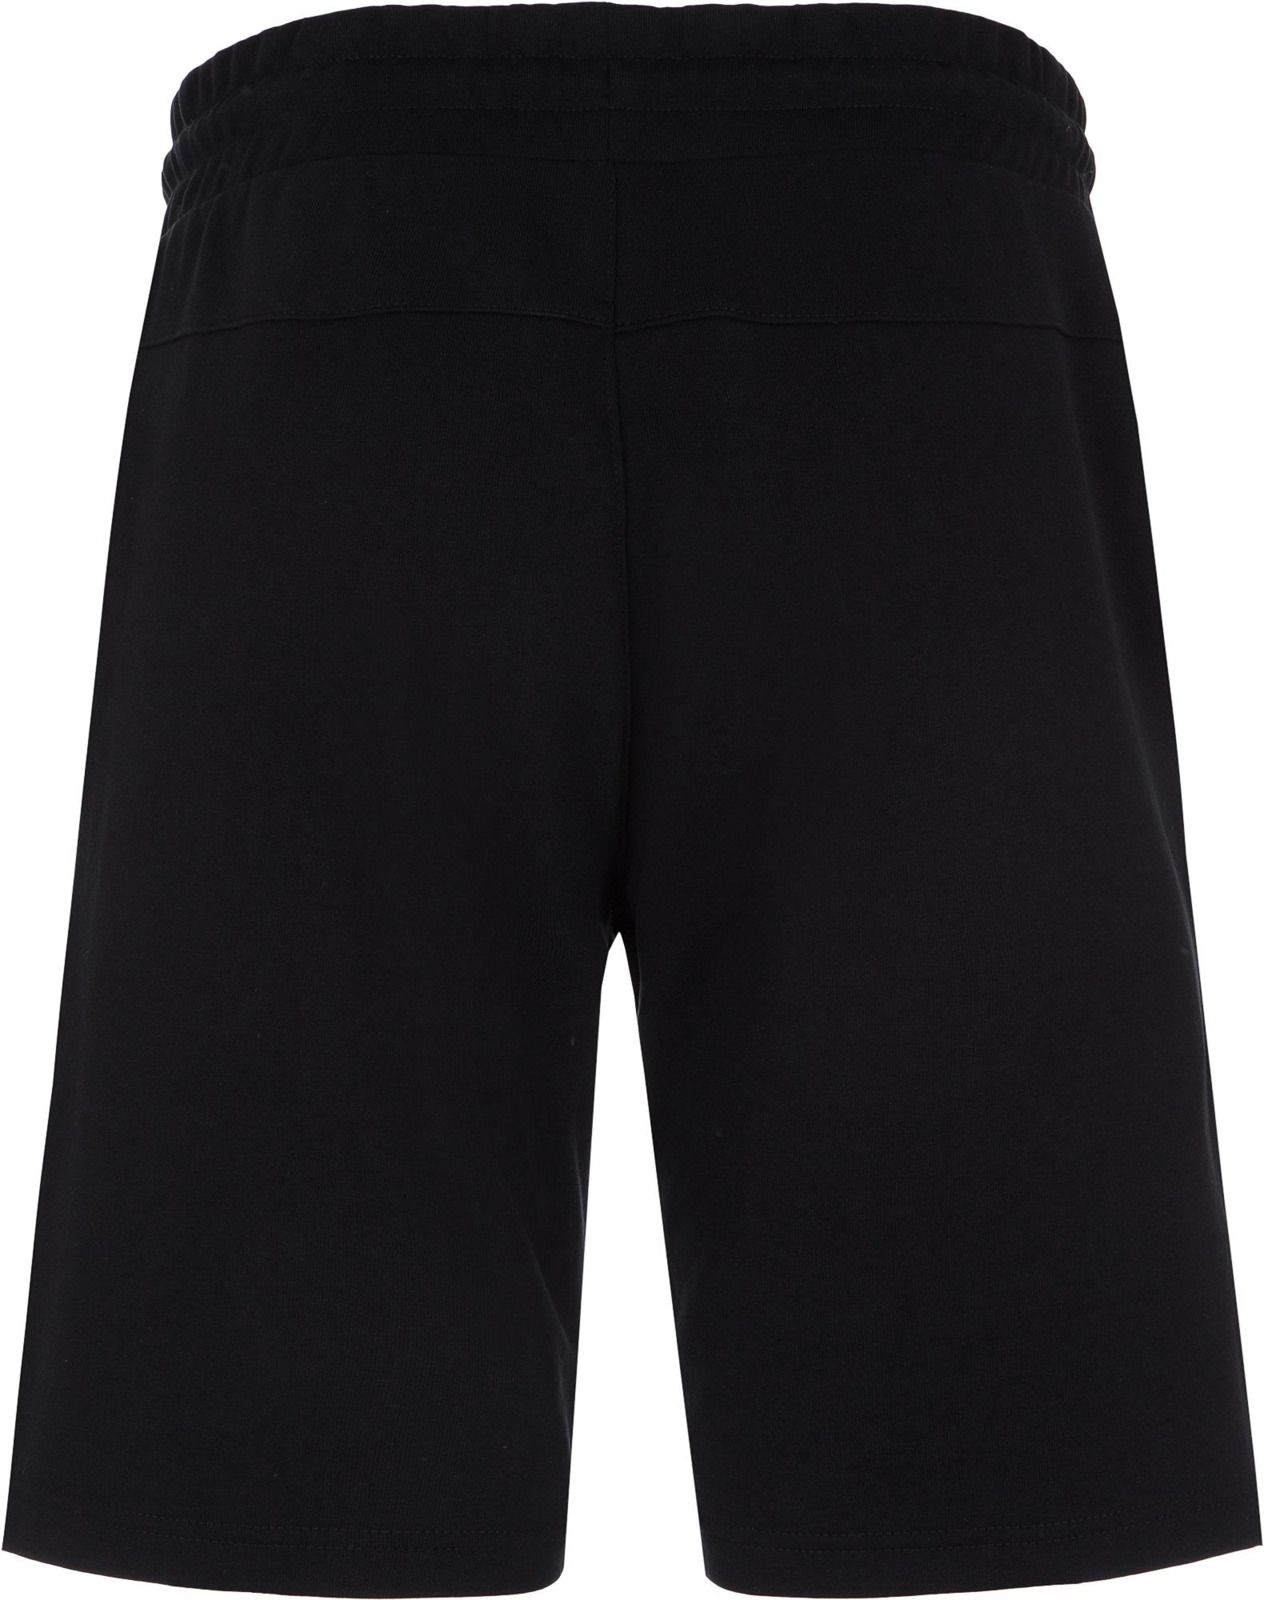   Kappa Men's Shorts, : . 304IDQ0-99.  M (48)